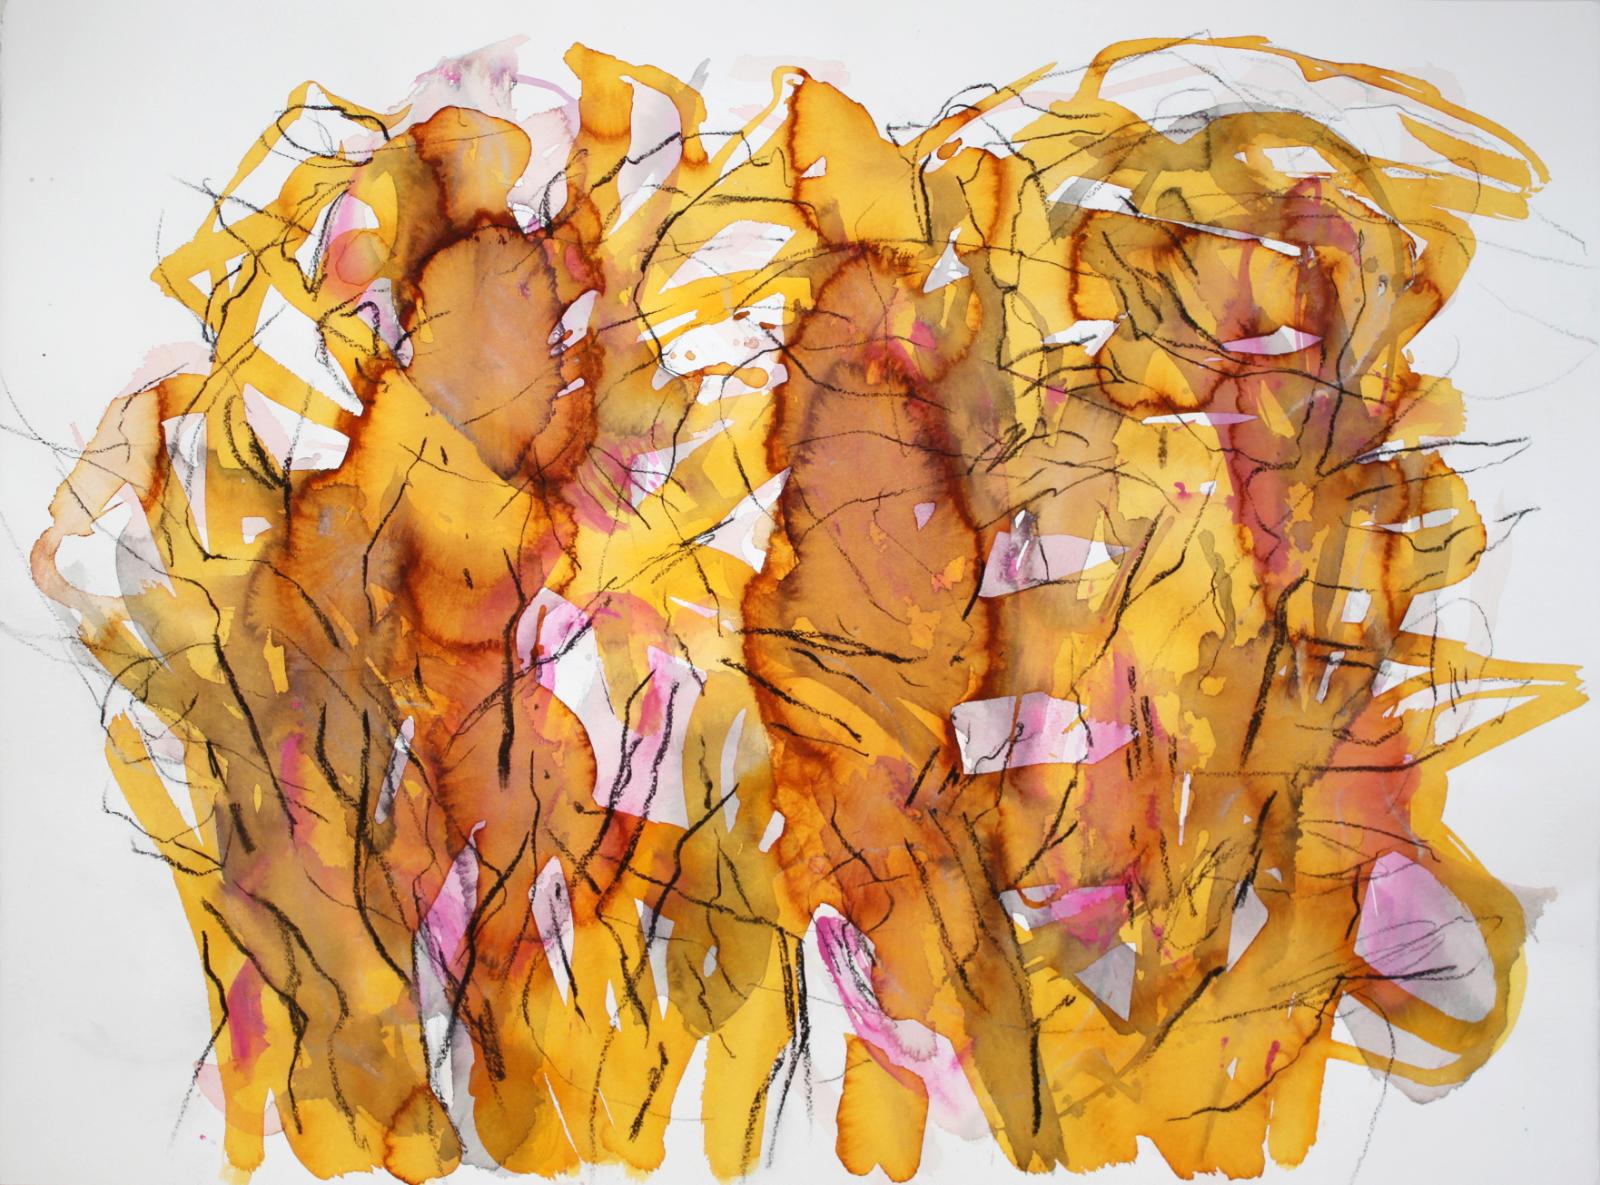 Elke Wree, Pacific Dusc, 2015, Tusche auf Papier, 57 cm x 77 cm, Preis auf Anfrage Galerie Cyprian Brenner